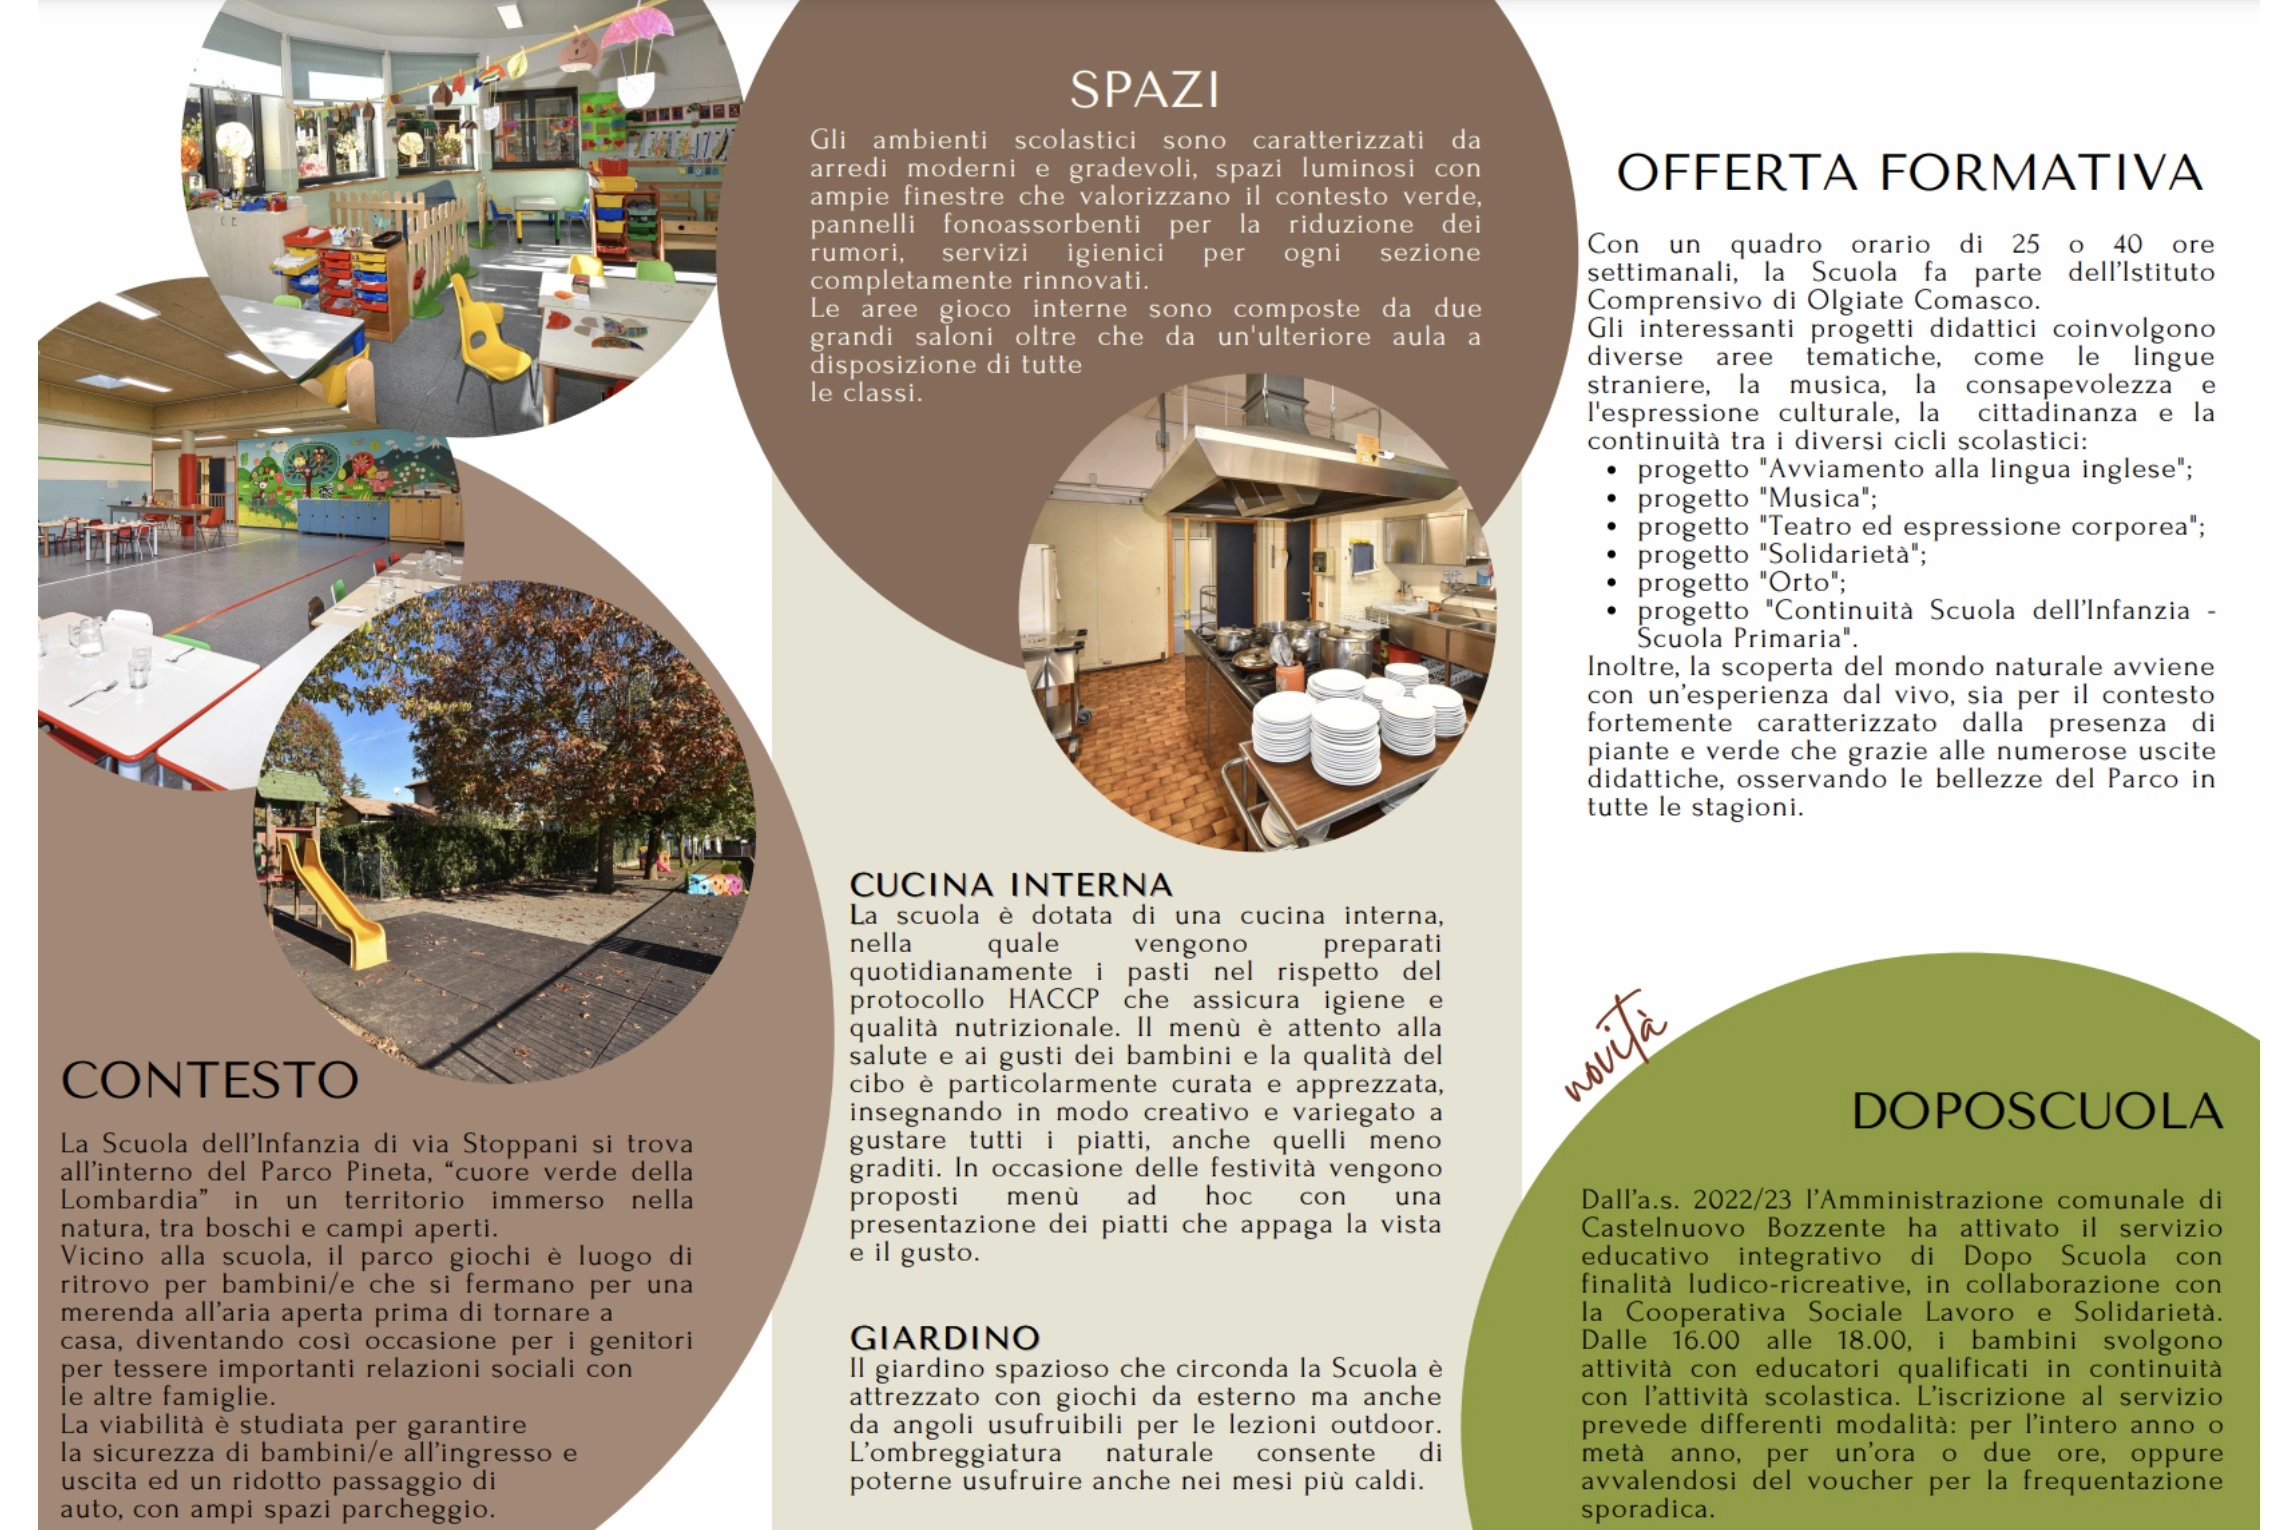 brochure infanzia Castelnuovo Bozzente